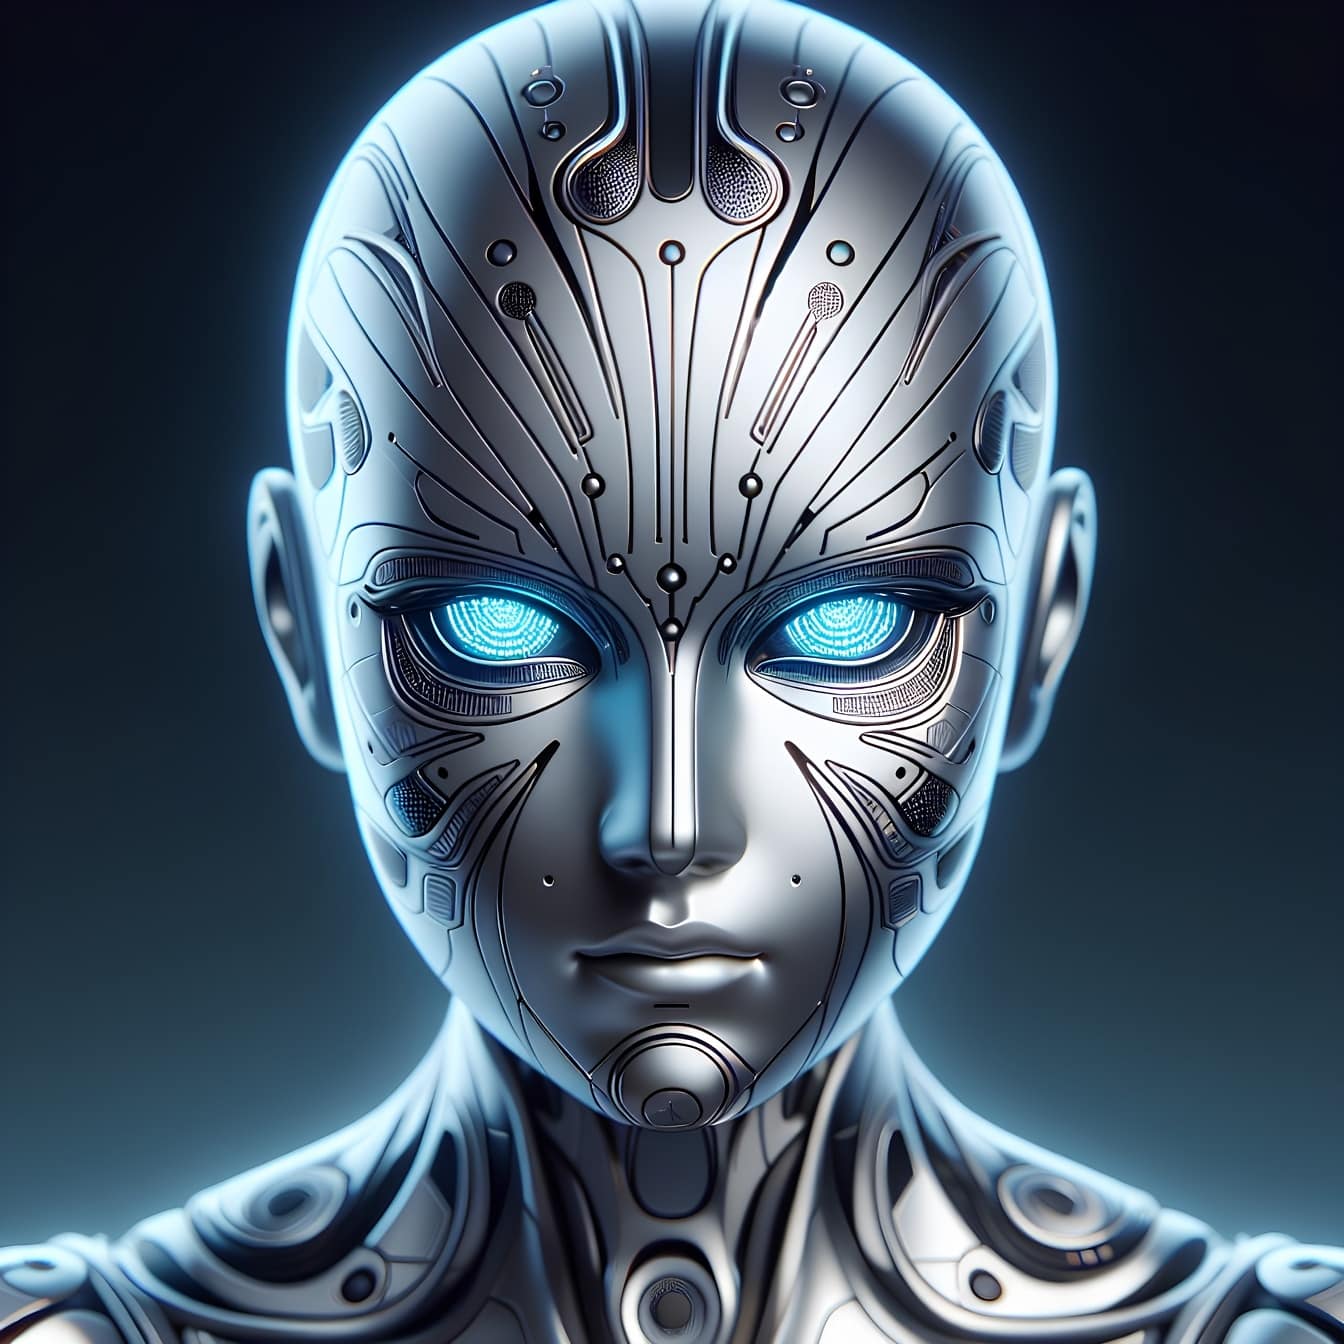 Hlava robota androida, kyborg-mimozemšťan s umělou inteligencí a zářícíma očima